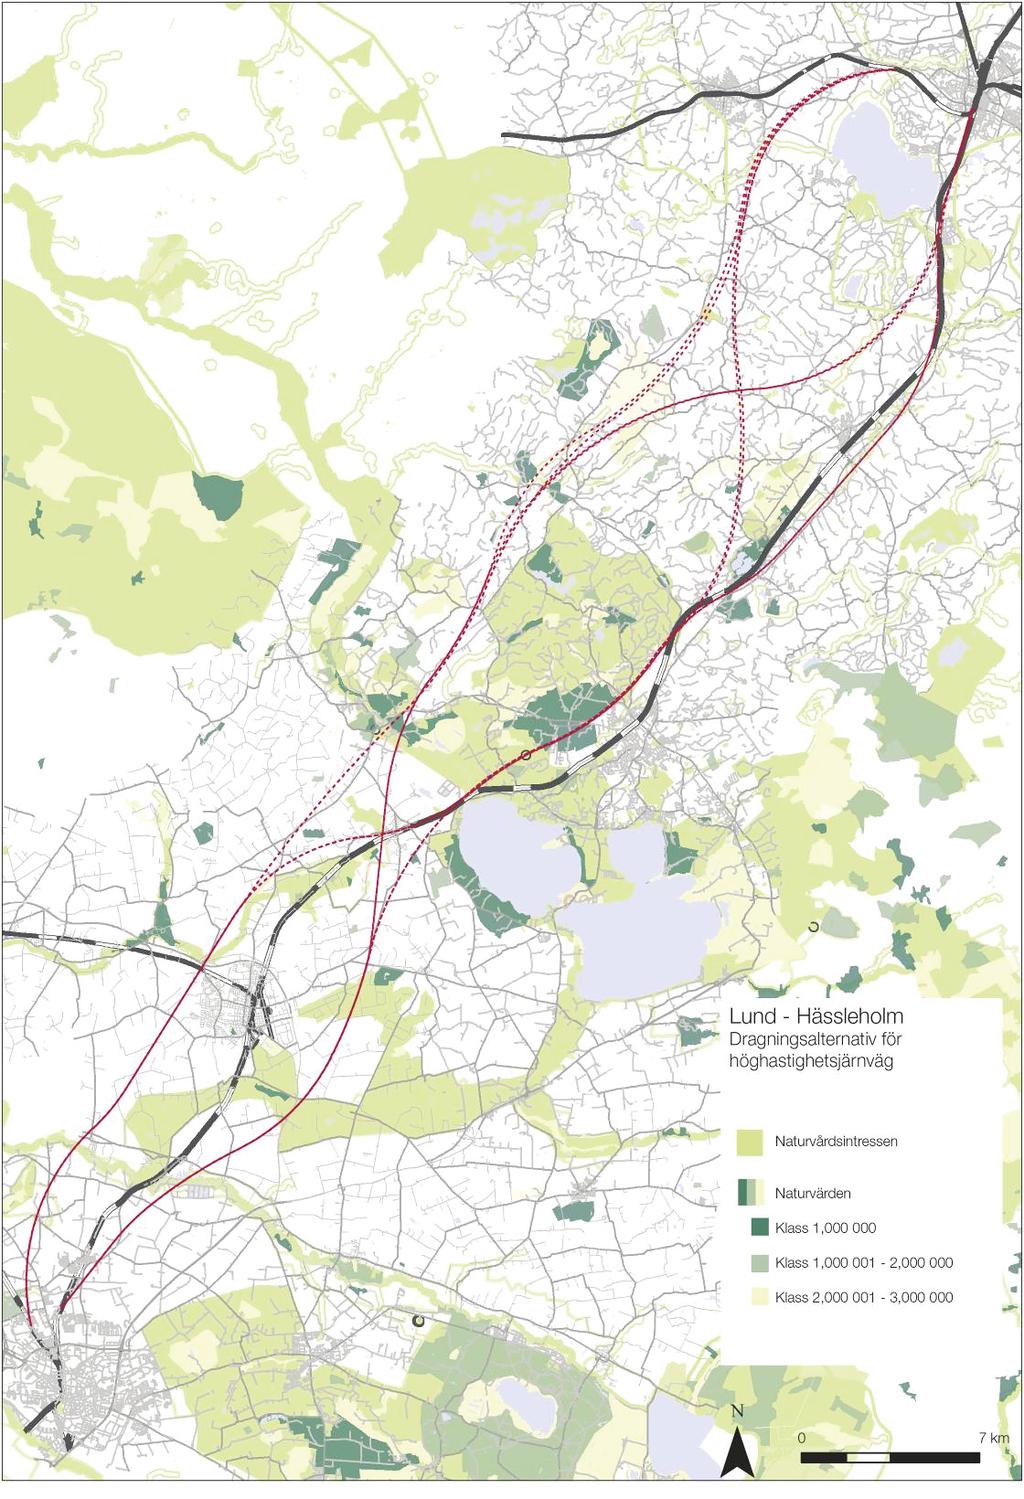 Stegvis utbyggnad av Södra stambanan Höghastighetsbana delen Lund - Hässleholm Samtliga alternativ är lagda för att minimera intrång i naturvärden och naturvårdsintressen.